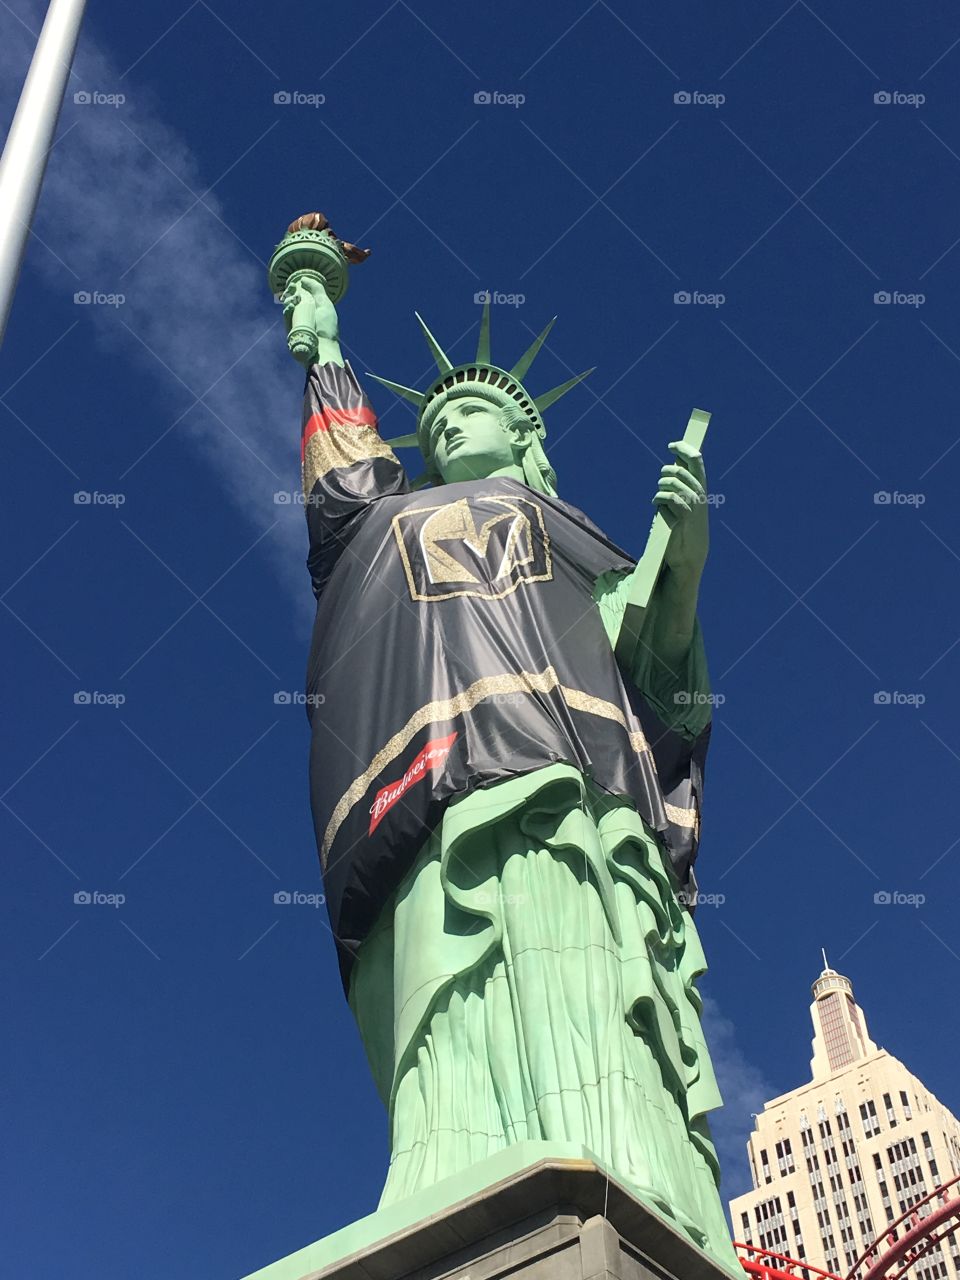 Hockey jersey on Vegas Statue of Liberty